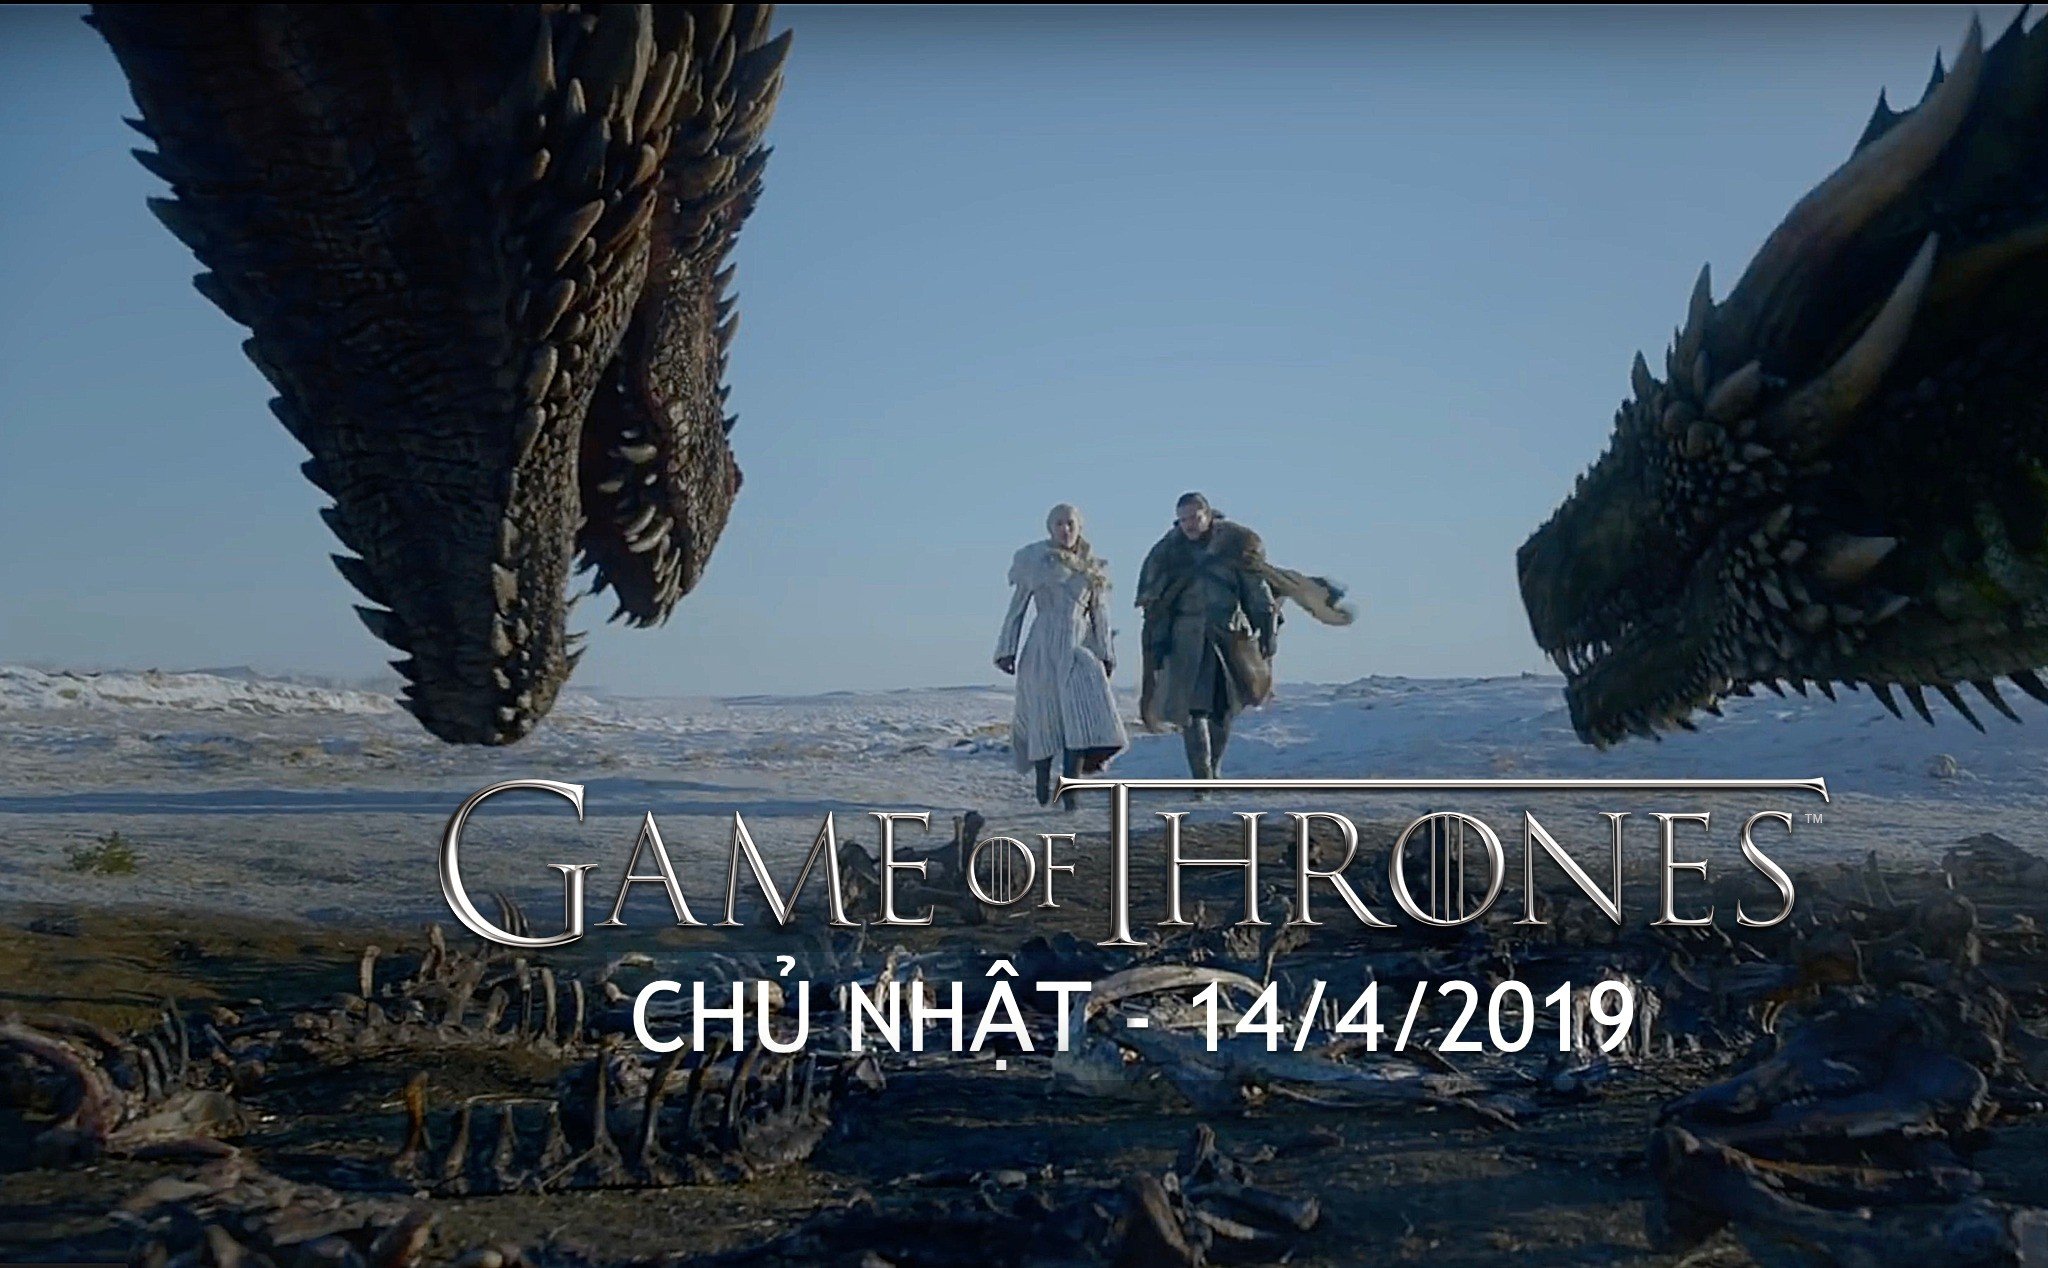 Mời xem Trailer Game Of Thrones phần cuối cùng. Tivi sẽ chiếu ngày 14/4/2019